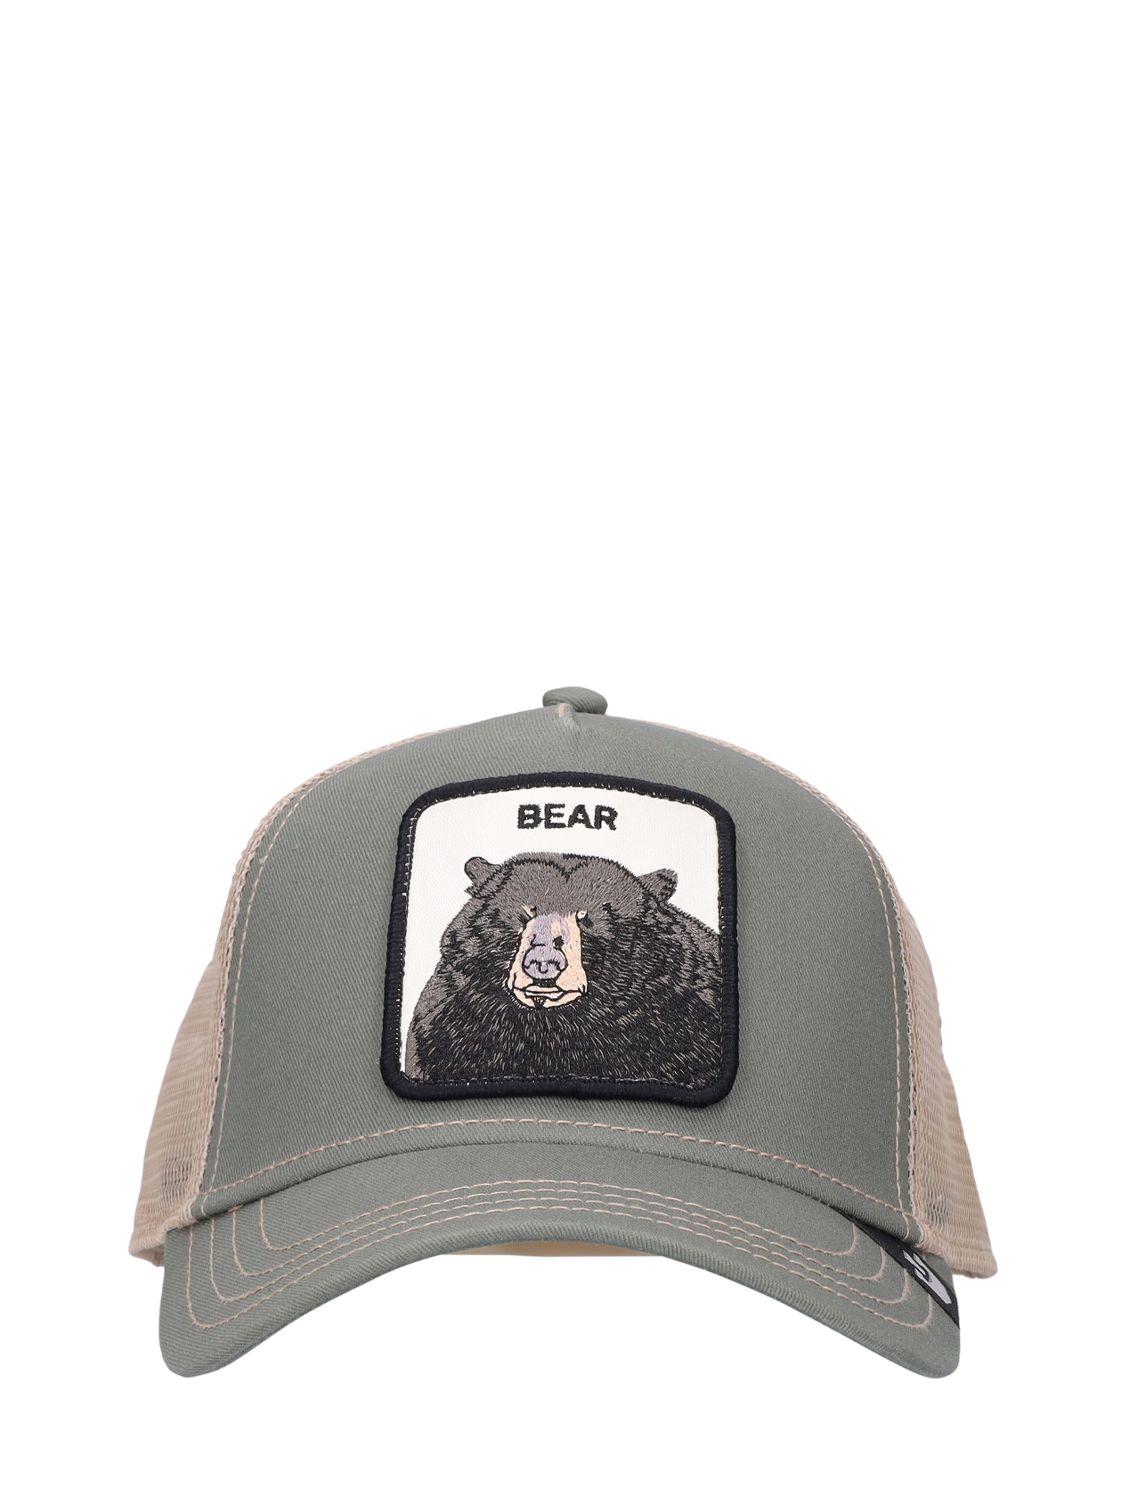 The Black Bear Trucker Hat W/patch